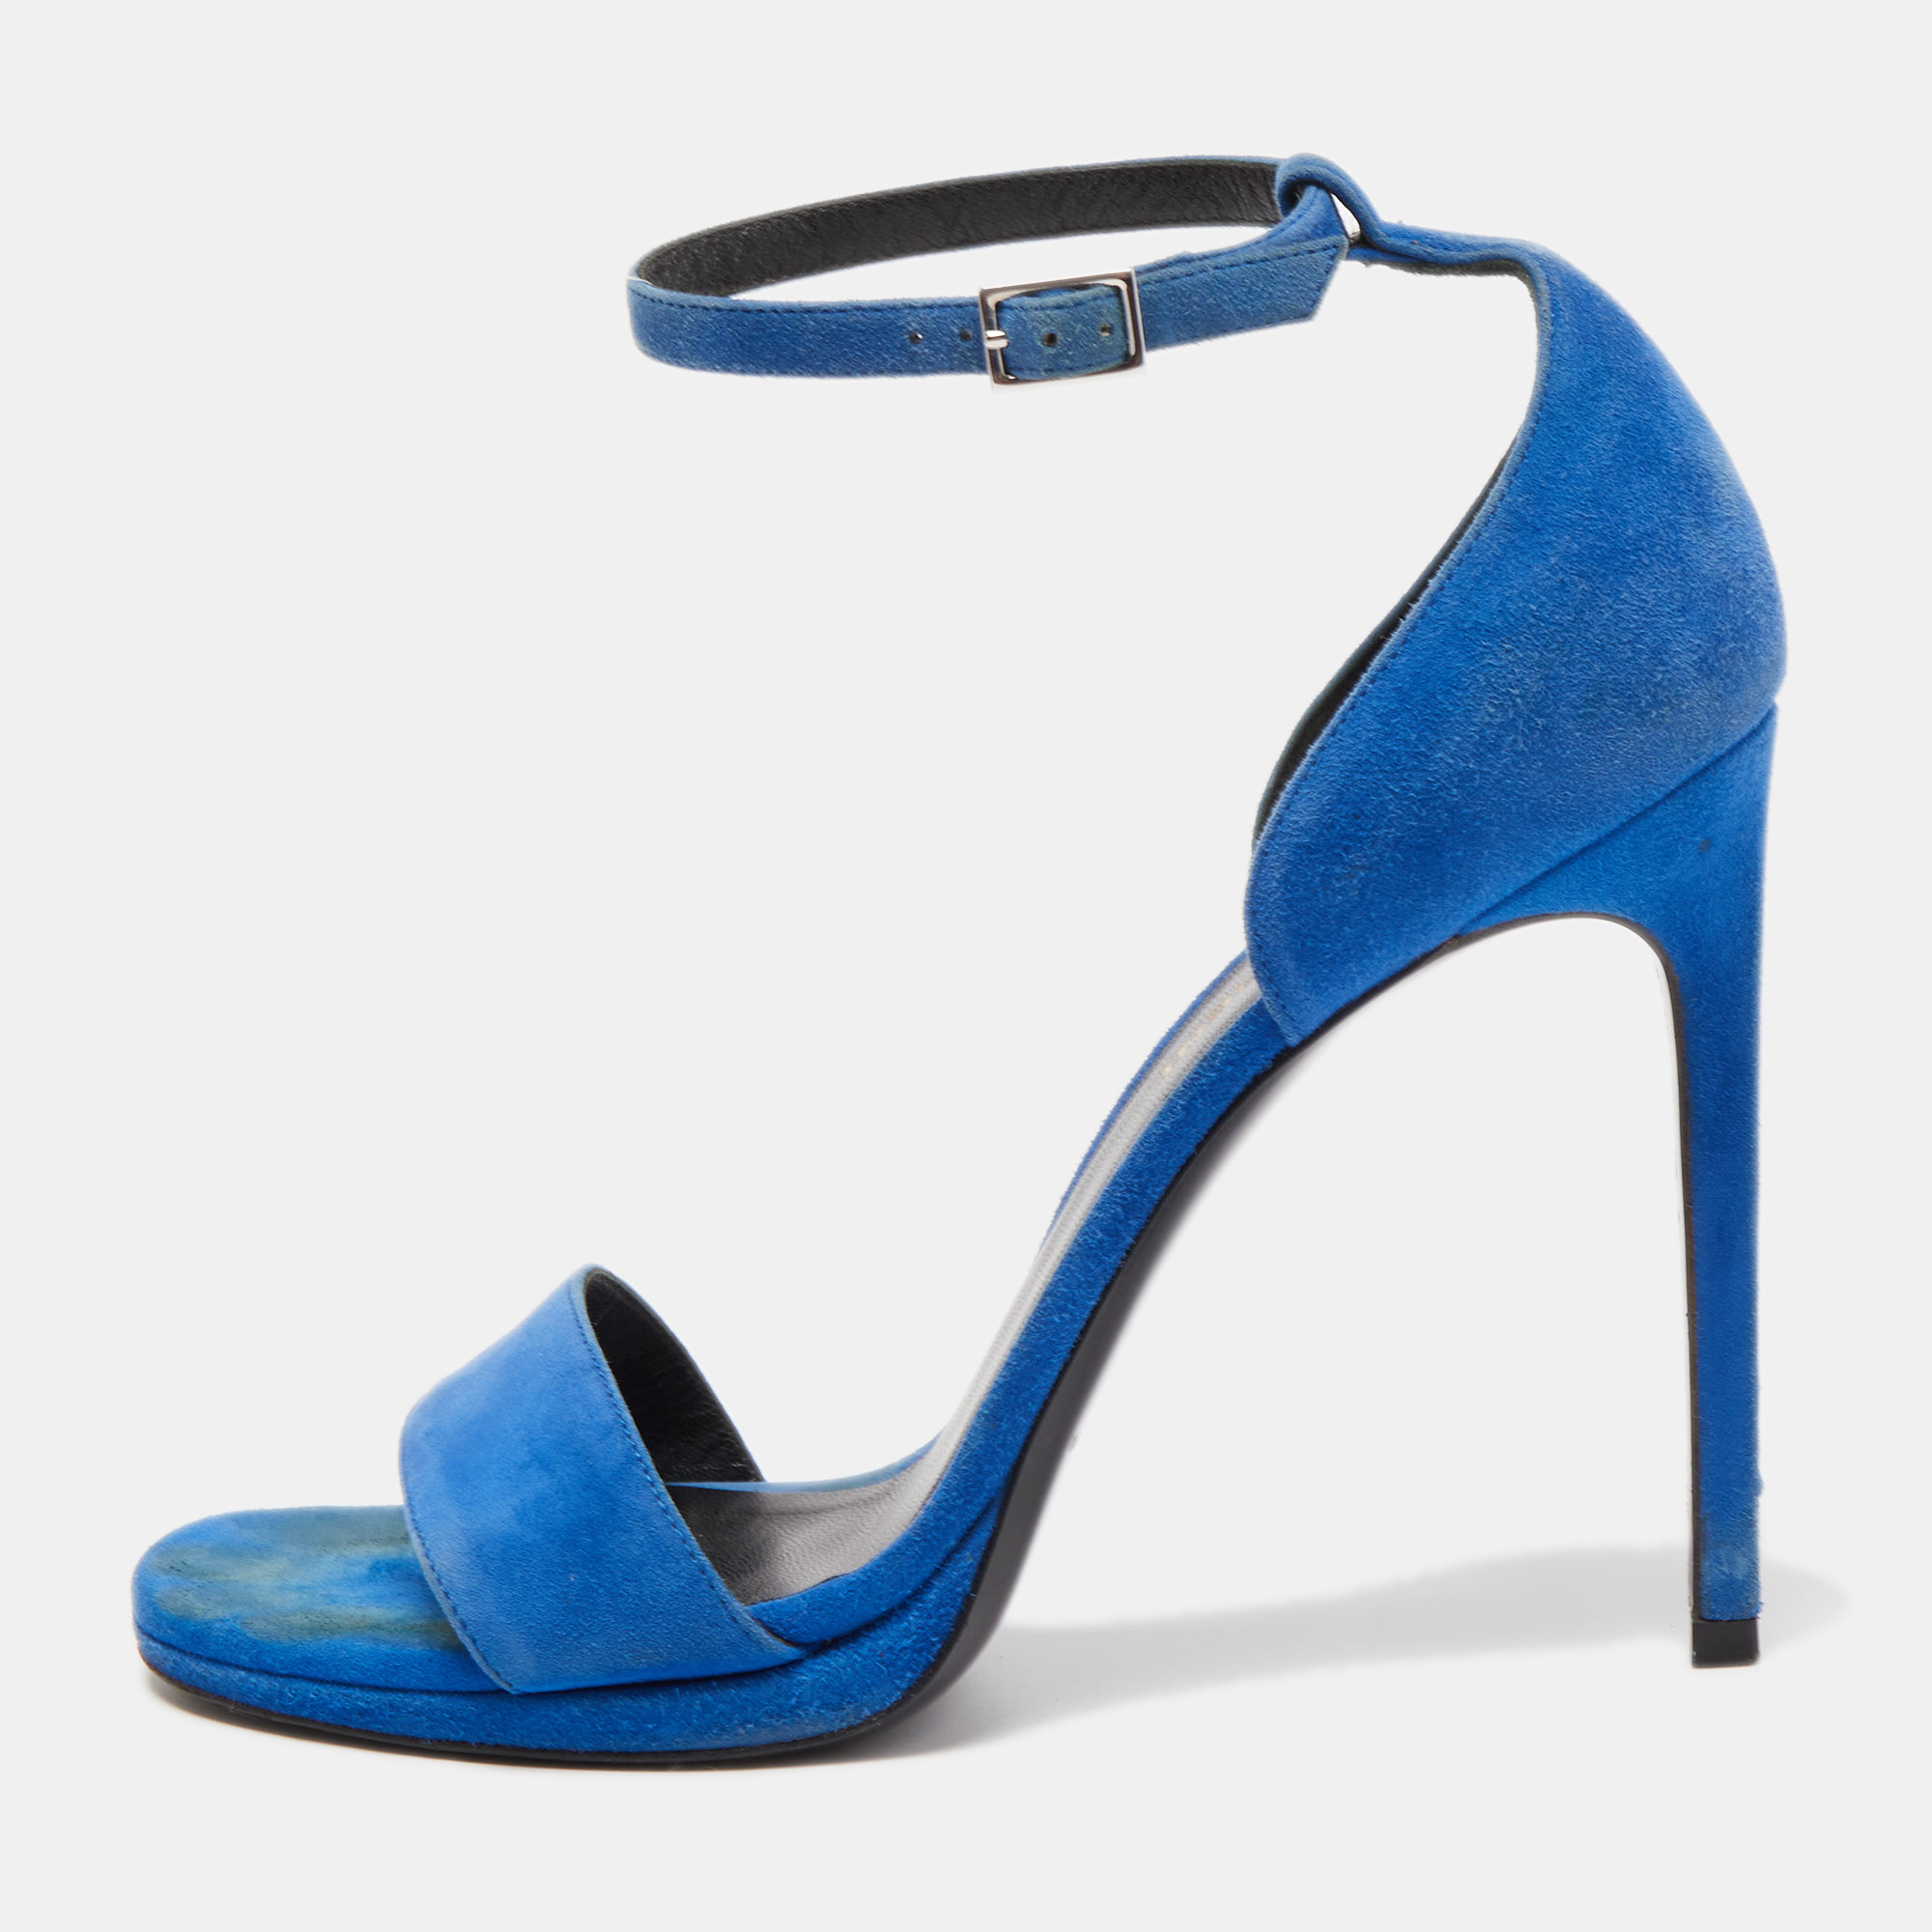 Saint laurent paris saint laurent blue suede jane sandals size 38.5